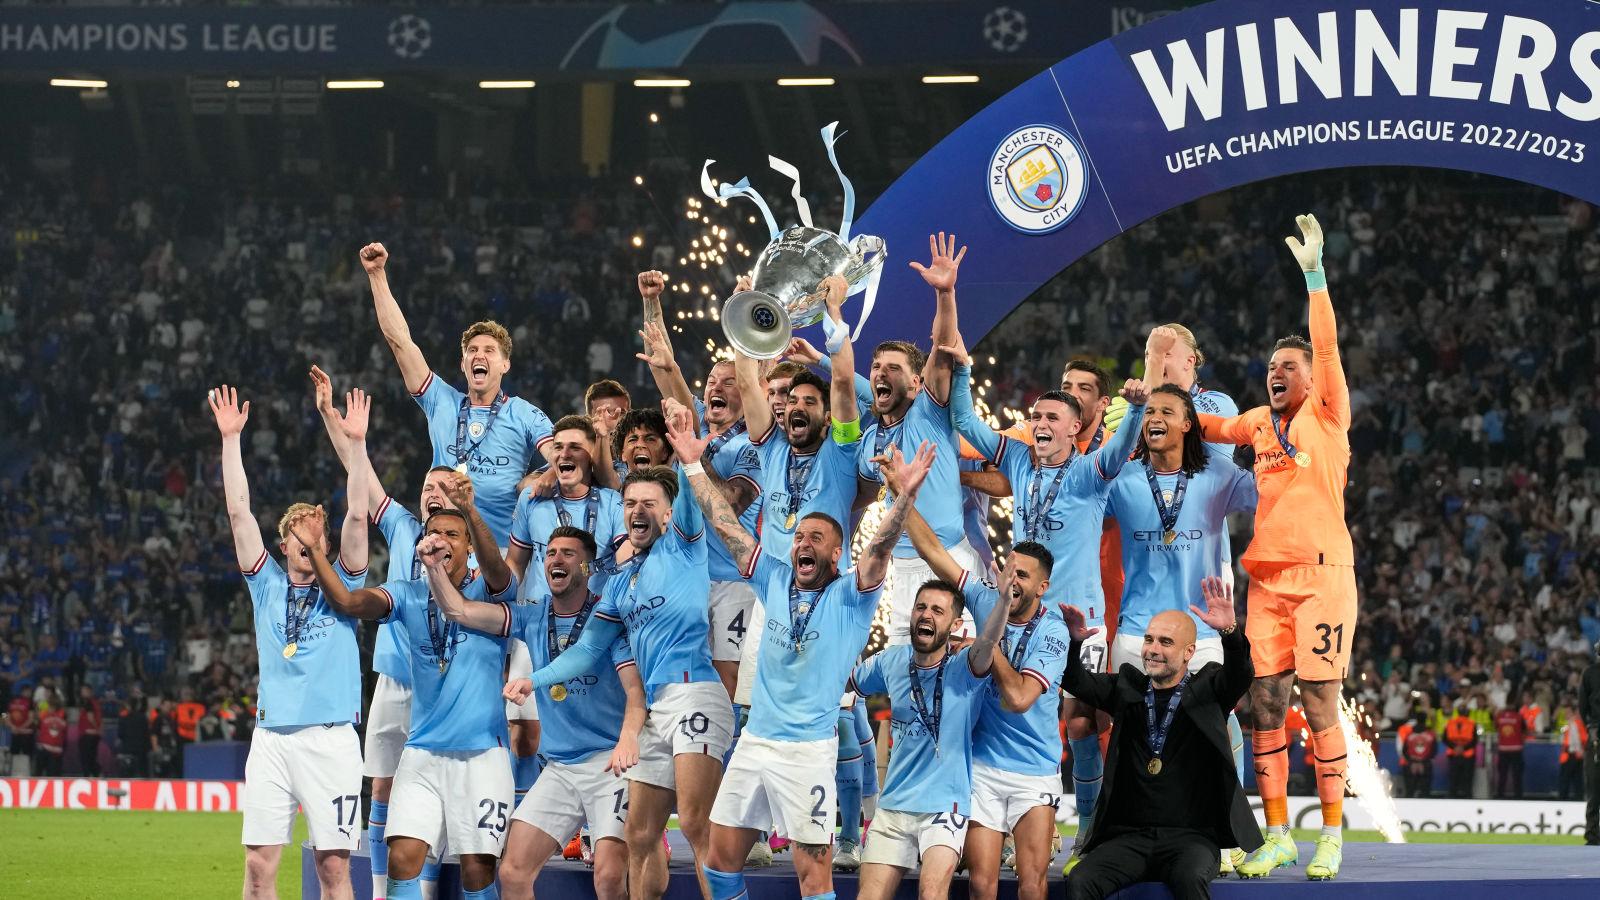 Man City lift the Champions League trophy